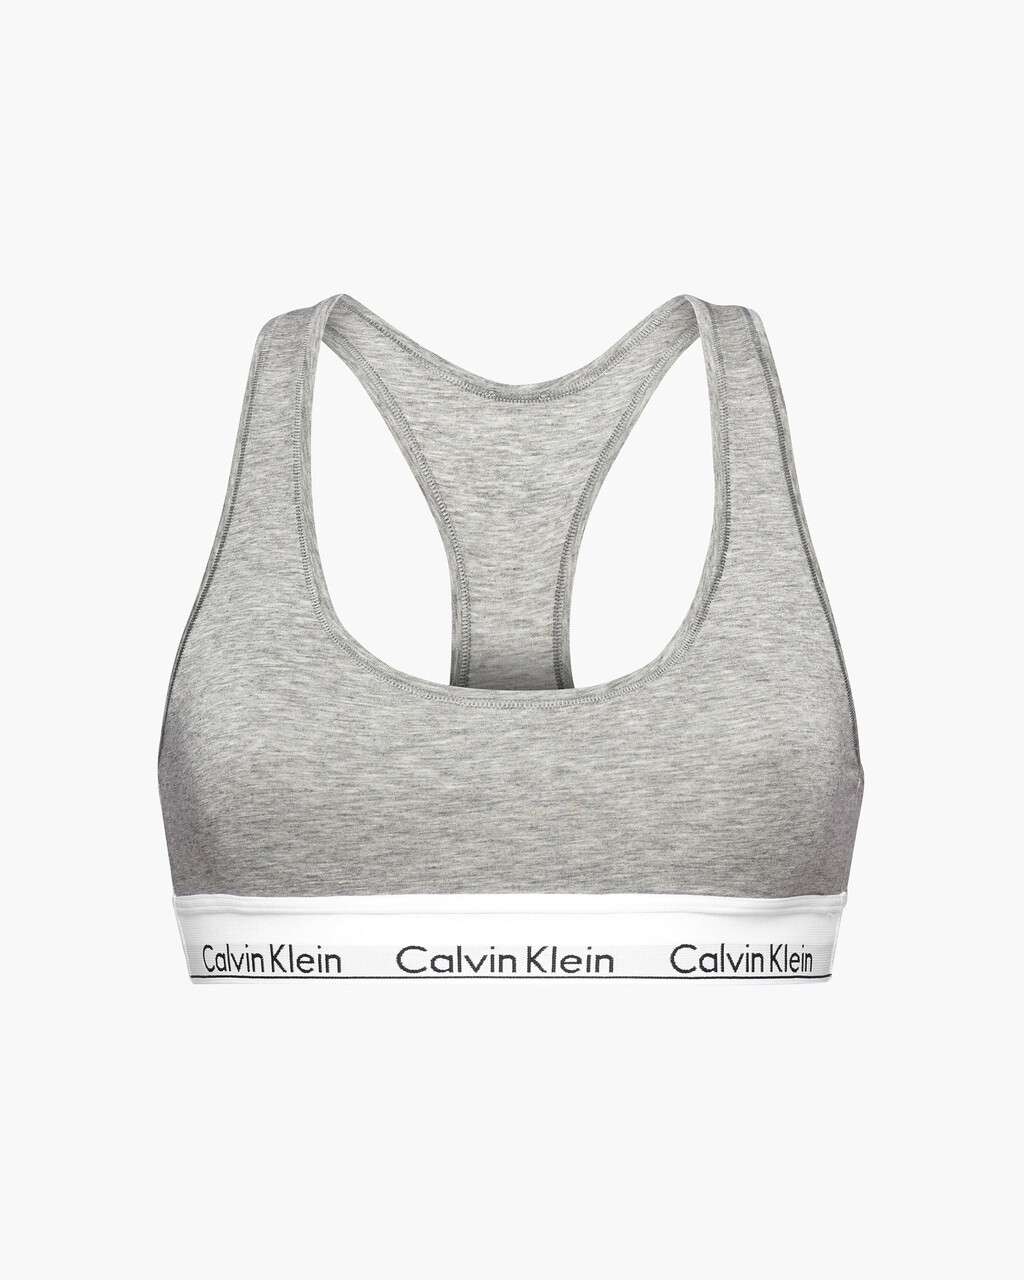 Buy Calvin Klein Women's Modern Cotton Lightly Lined Bralette Bra